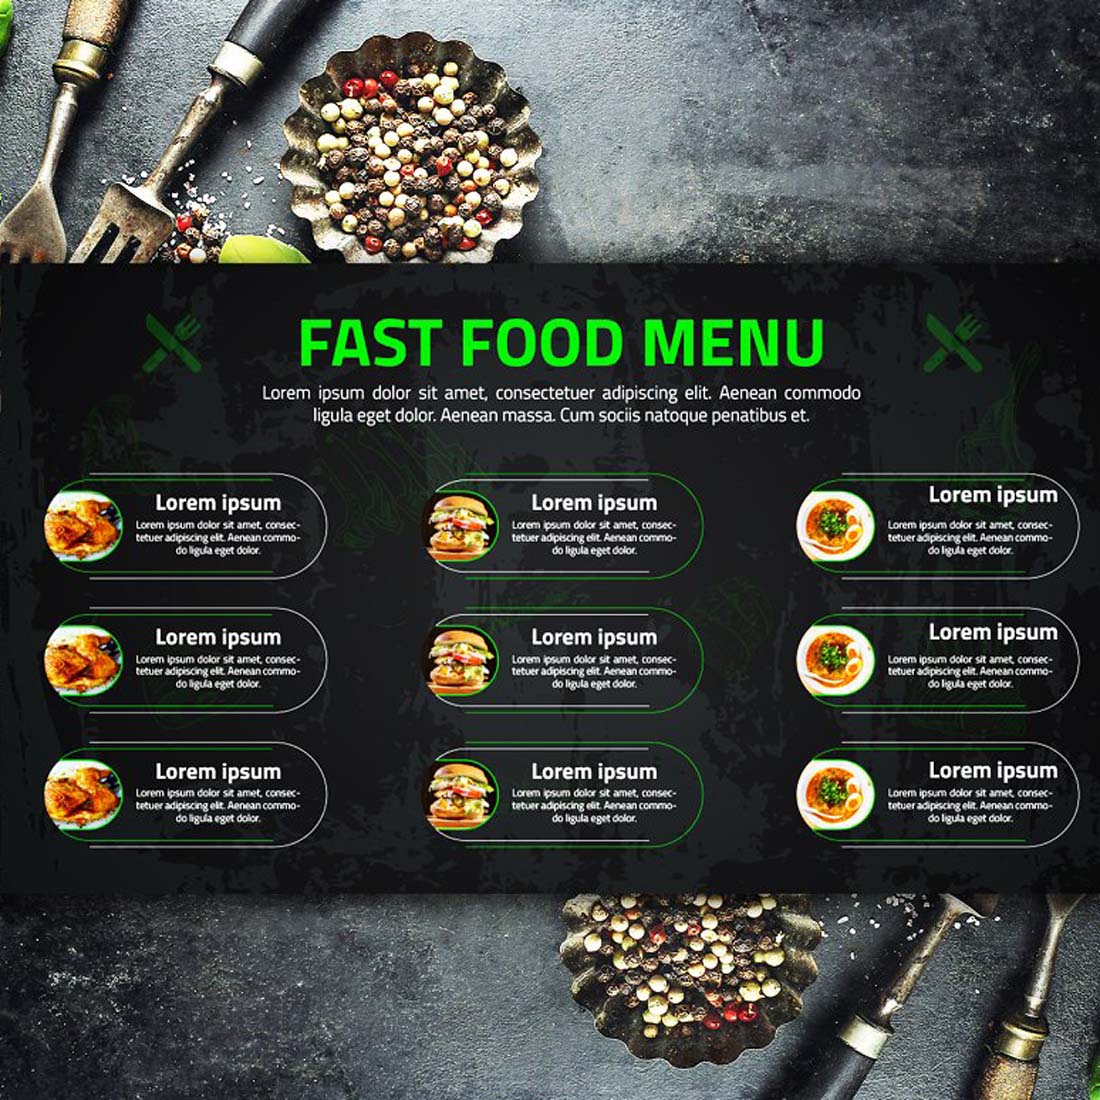 Fast Food Digital Menu Design preview image.